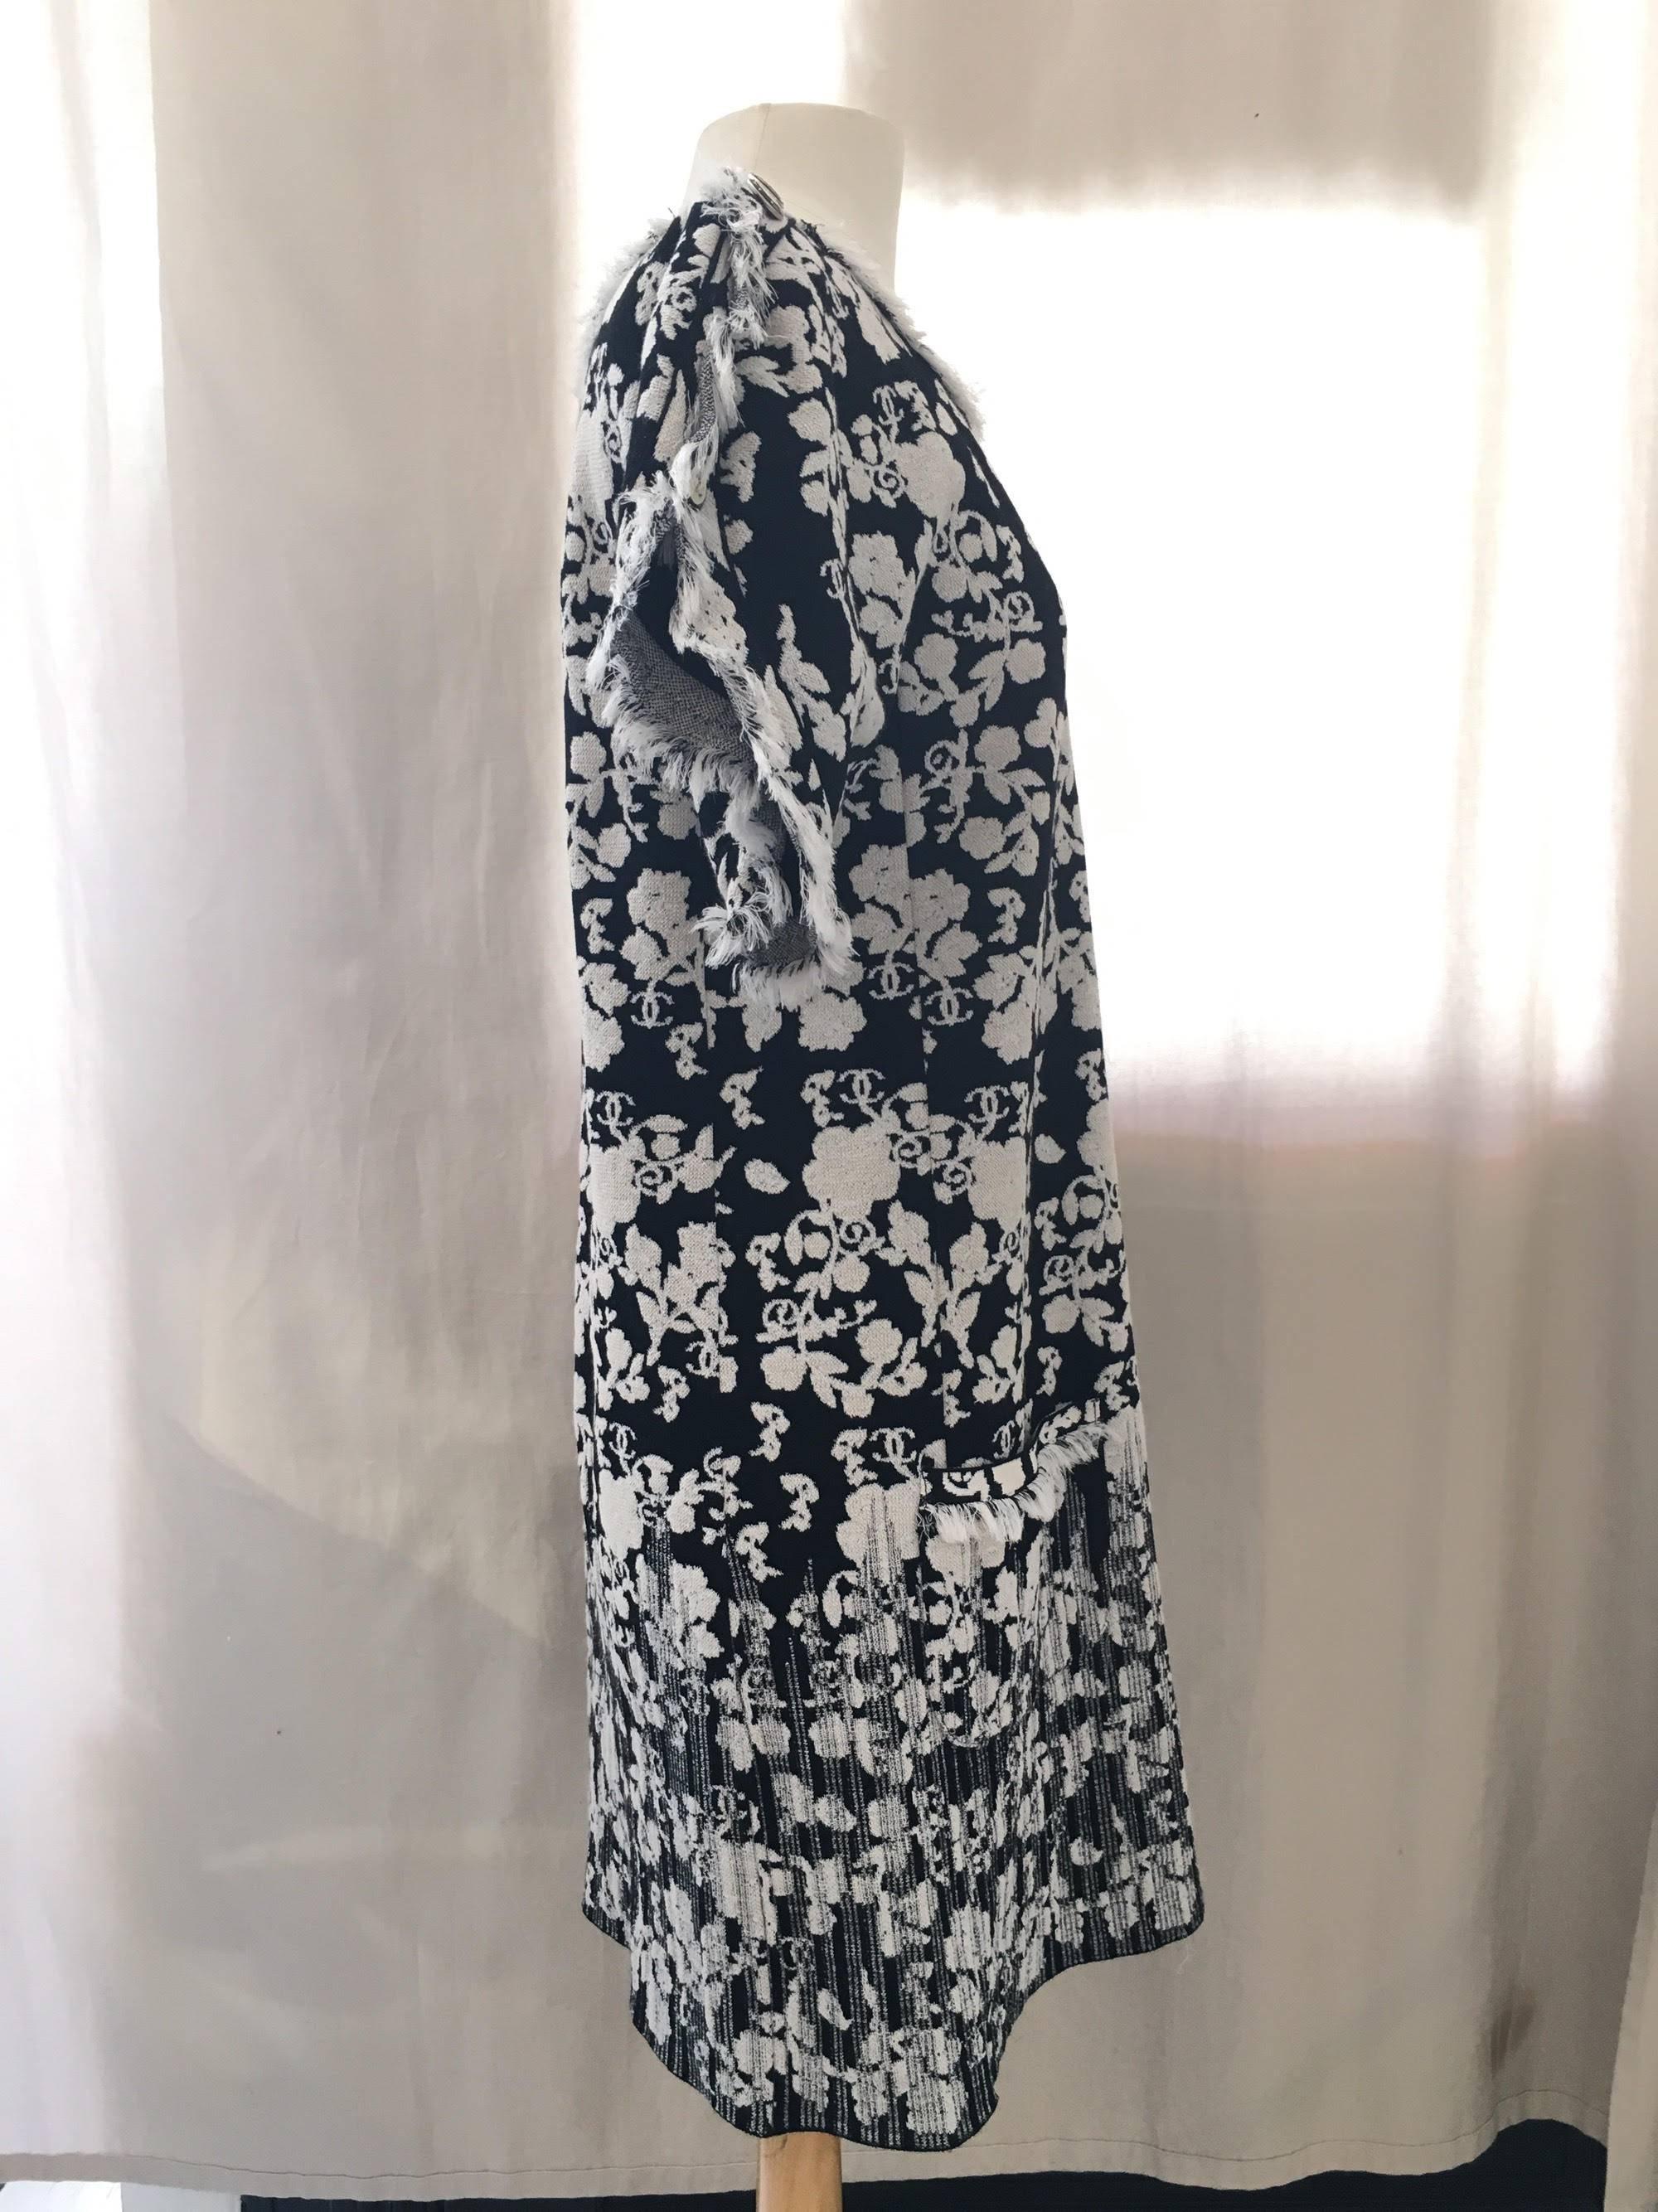 Chanel Black/White Printed CC Dress size 38 
retail est. $3,400